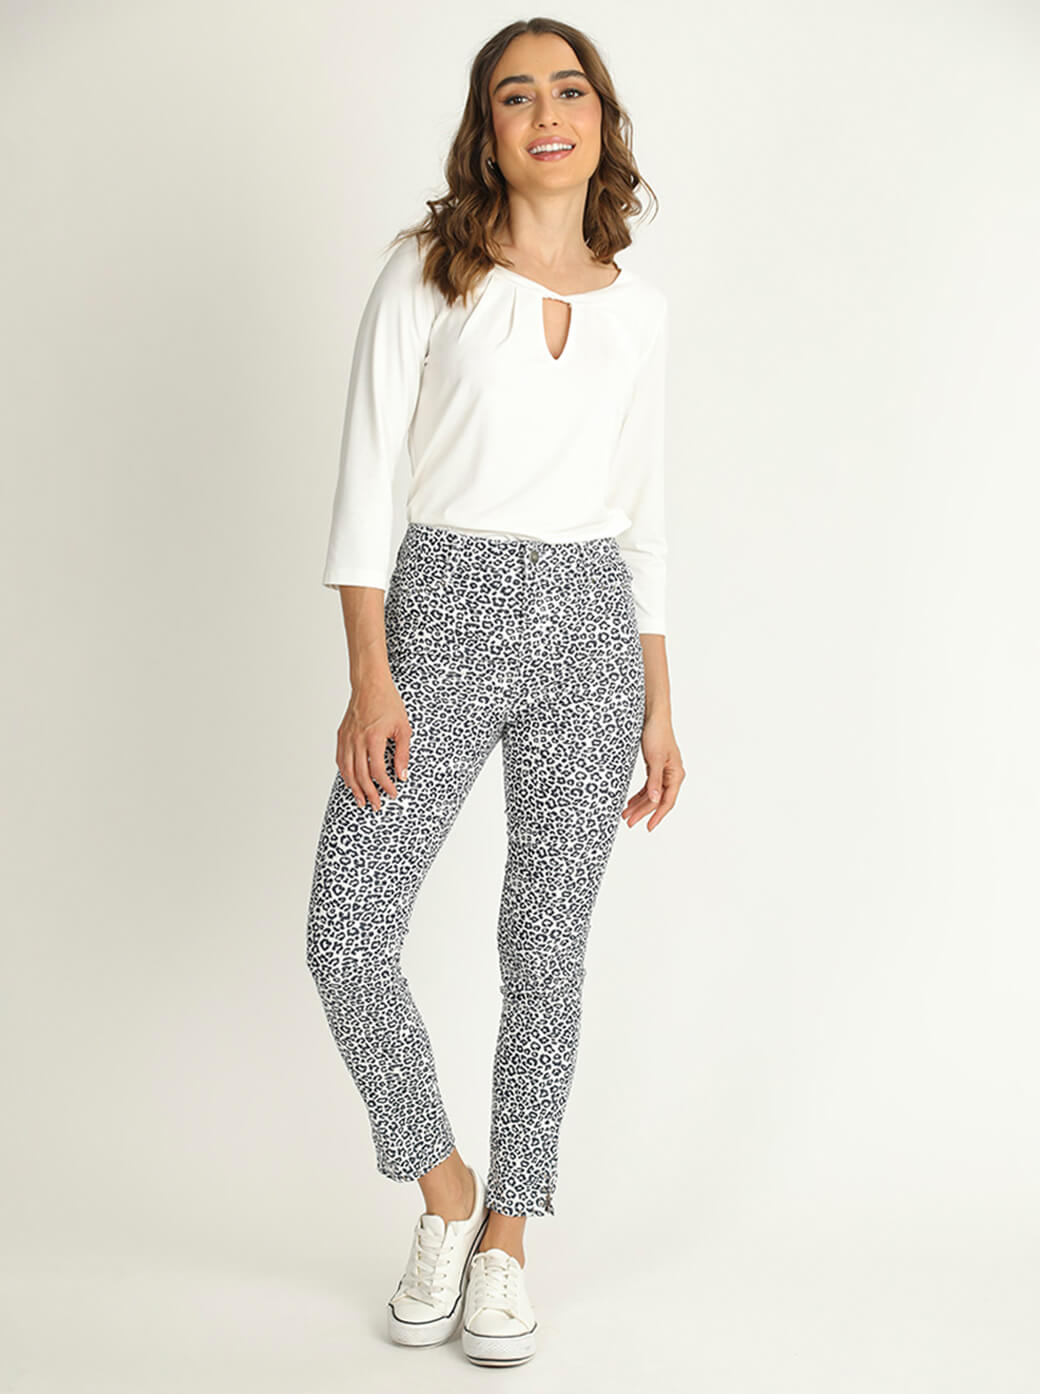 new J BRAND women jeans mid-rise crop skinny JB002436 pink jaguar sz 23  $228 - Walmart.com